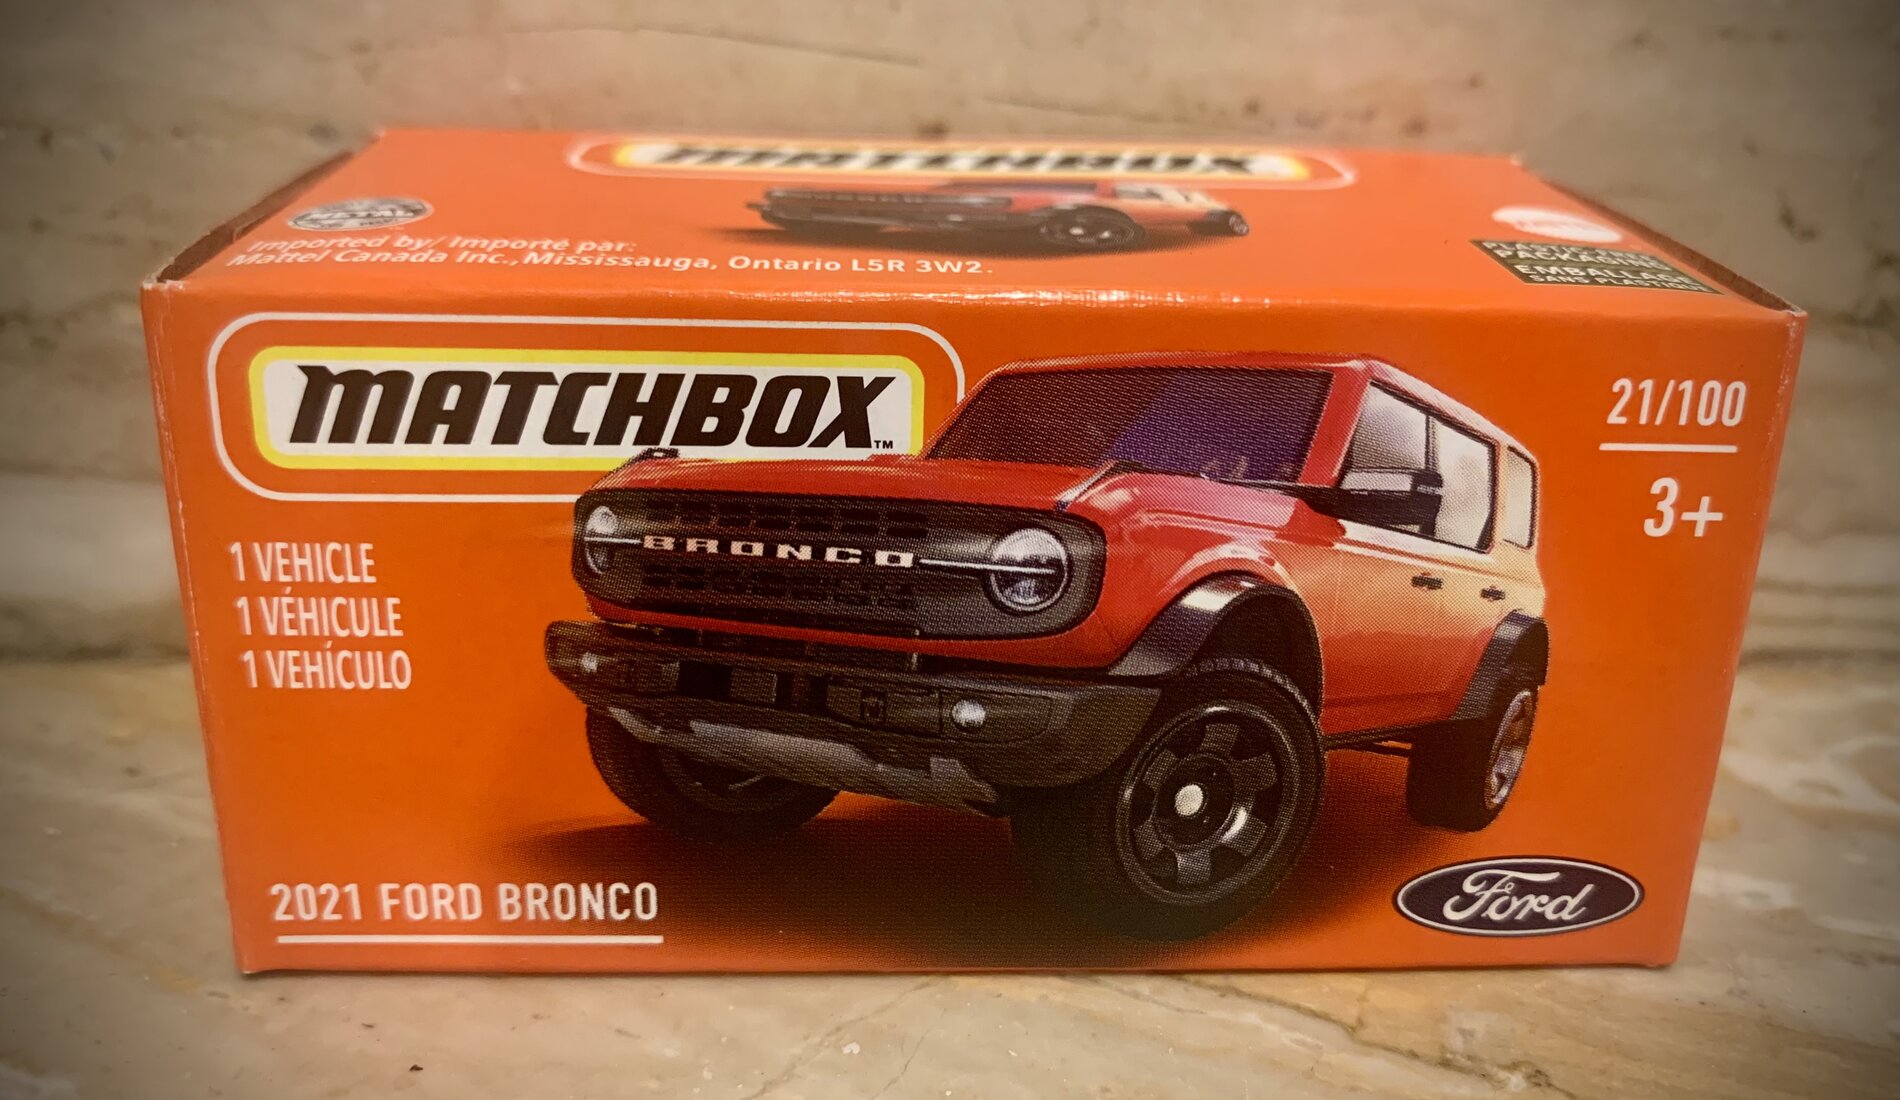 Ford Bronco Matchbox: 2021 Bronco 4 DR 82565615-F8FF-45B2-AE5E-C3B709466C8B